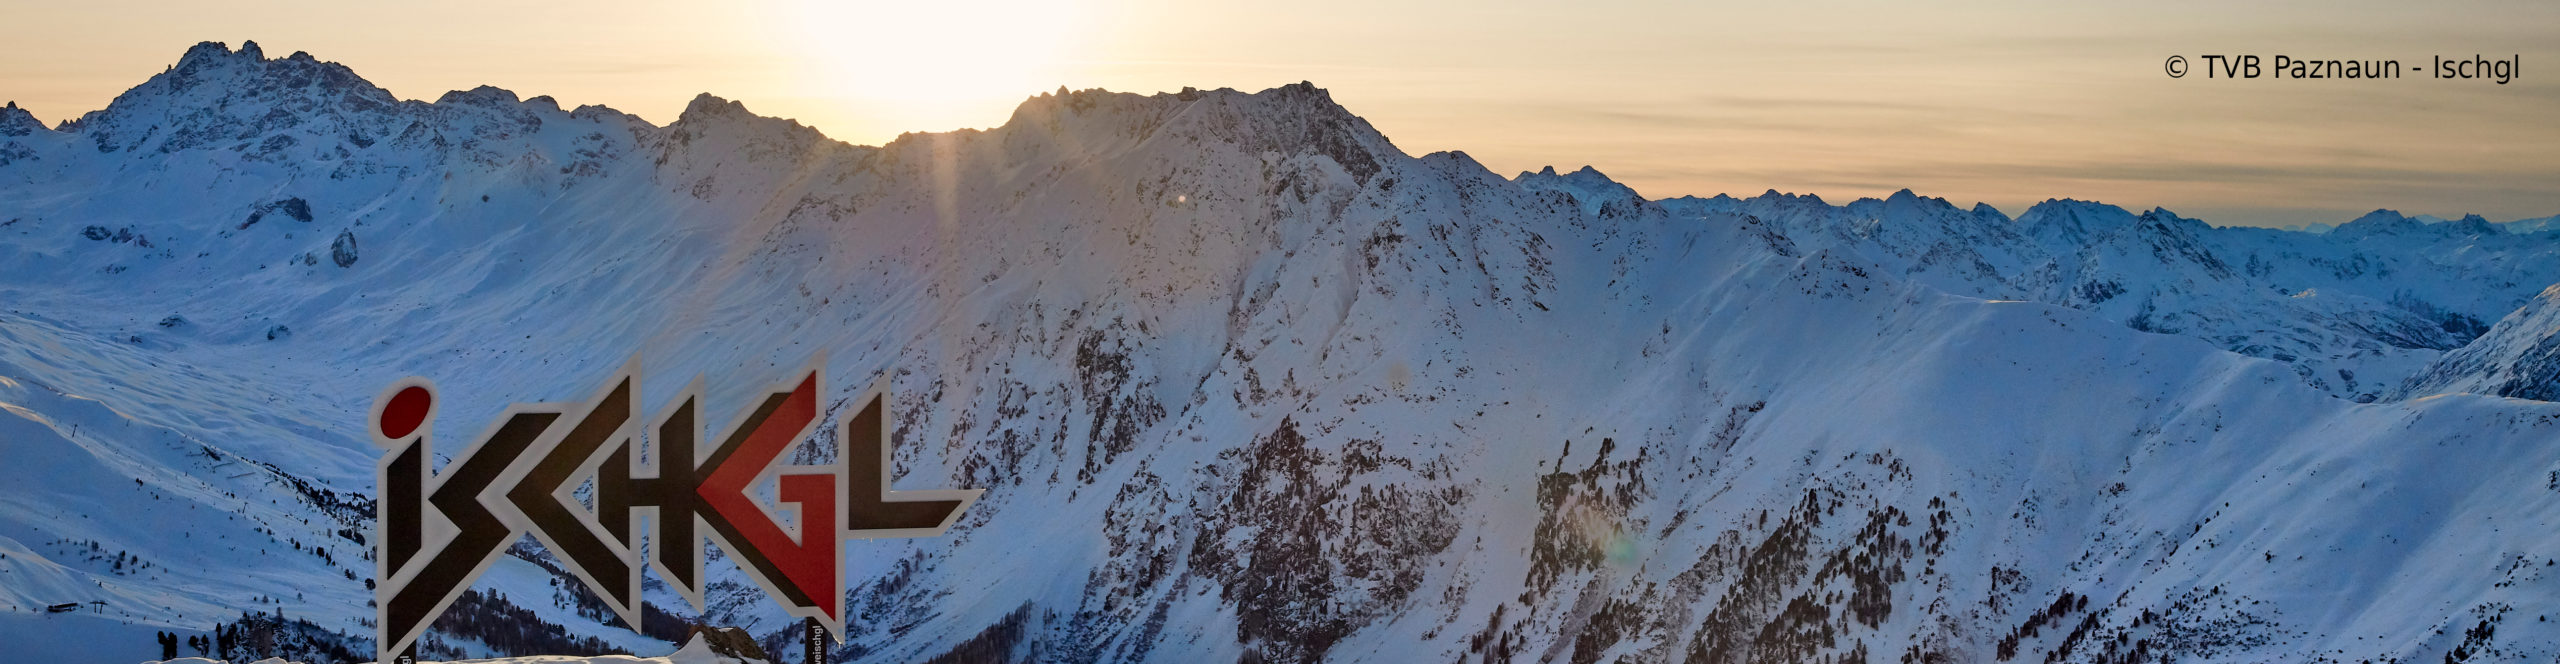 ISCHGL, SERFAUS, SÖLDEN – Skisafari über Ostern – 4 Schneetage – Österreichs beste Skigebiete 